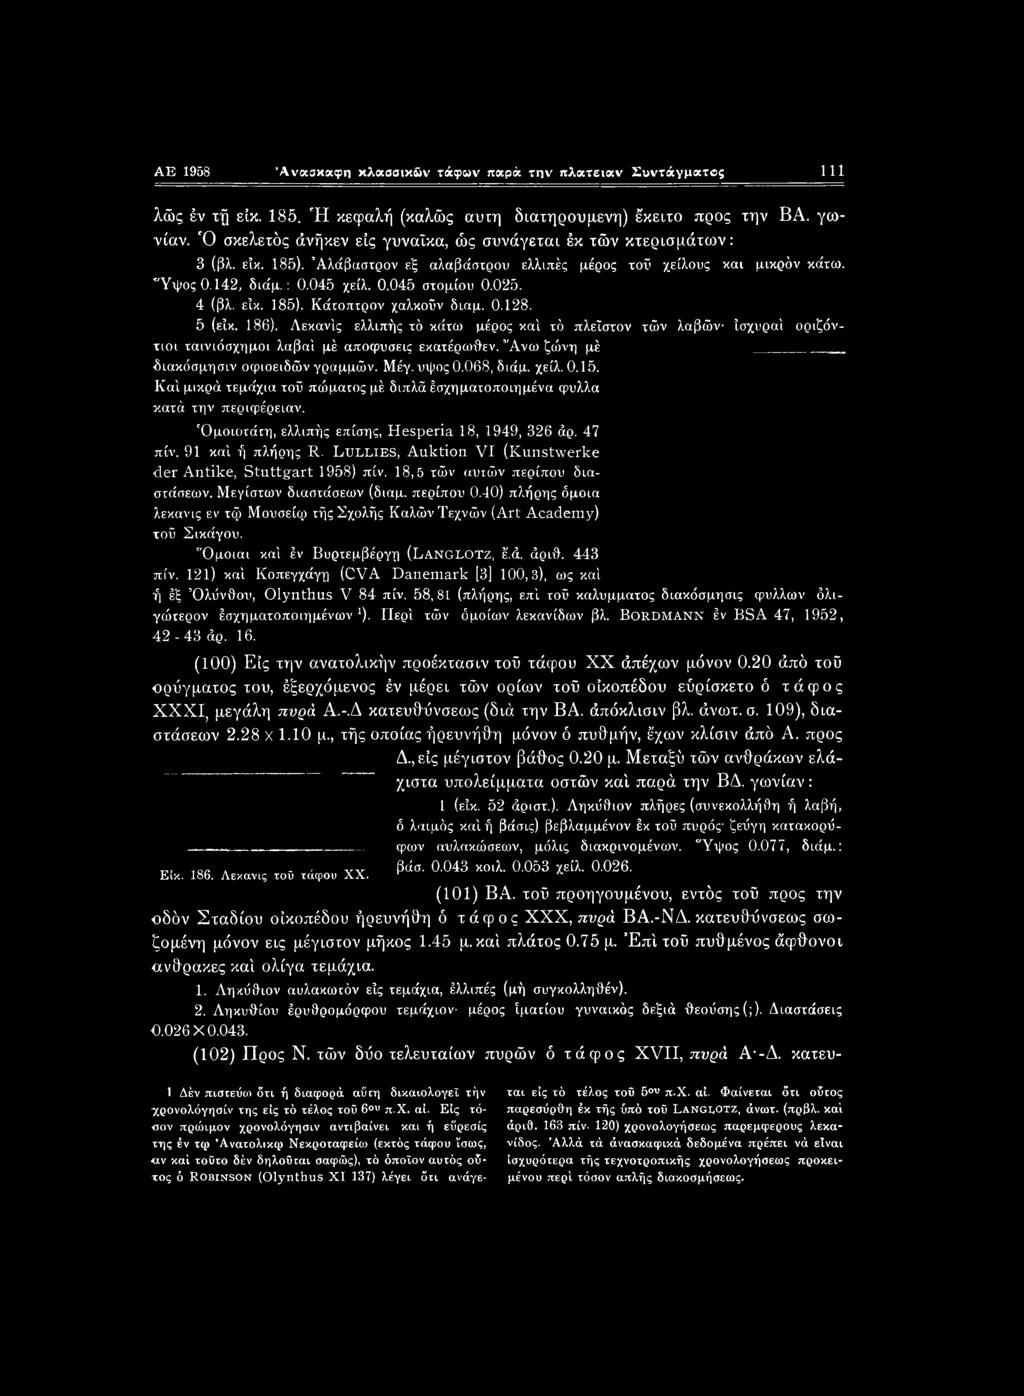 Όμοιοτάτη, ελλιπής επίσης, Hesperia 18, 1949, 326 άρ. 47 πίν. 91 καί ή πλήρης R. Lullies, Auktion VI (Kunstwerke der Antike, Stuttgart 1958) πίν. 18,5 τών αυτών περίπου διαστάσεων.